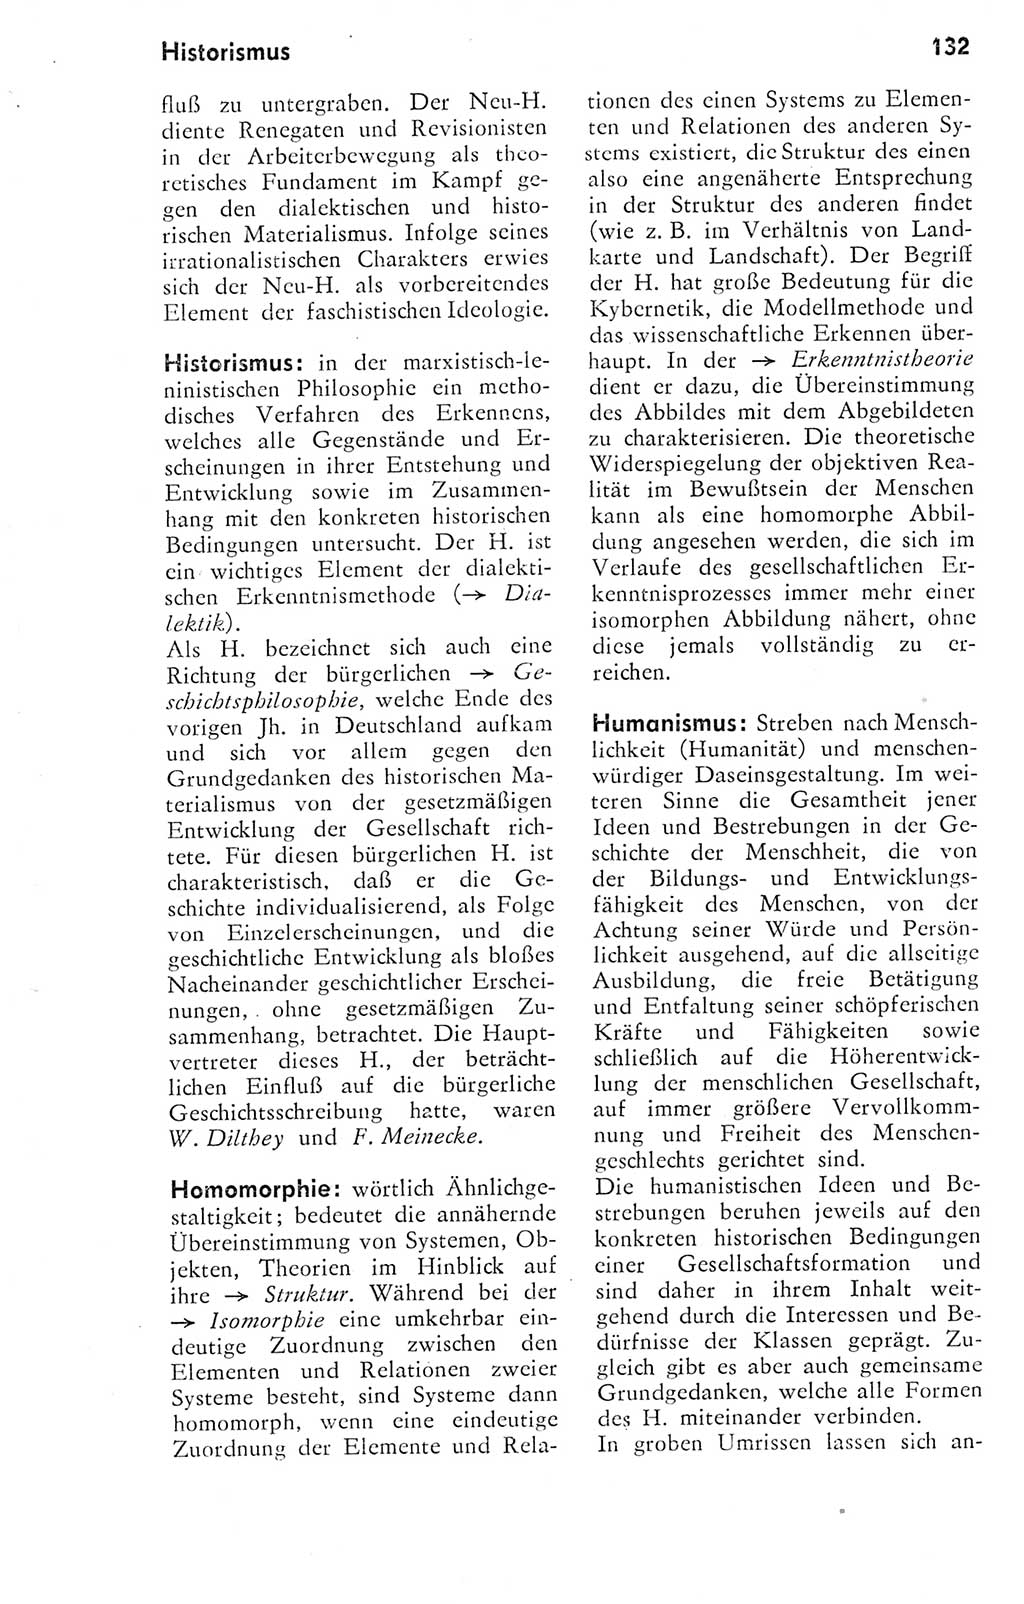 Kleines Wörterbuch der marxistisch-leninistischen Philosophie [Deutsche Demokratische Republik (DDR)] 1974, Seite 132 (Kl. Wb. ML Phil. DDR 1974, S. 132)